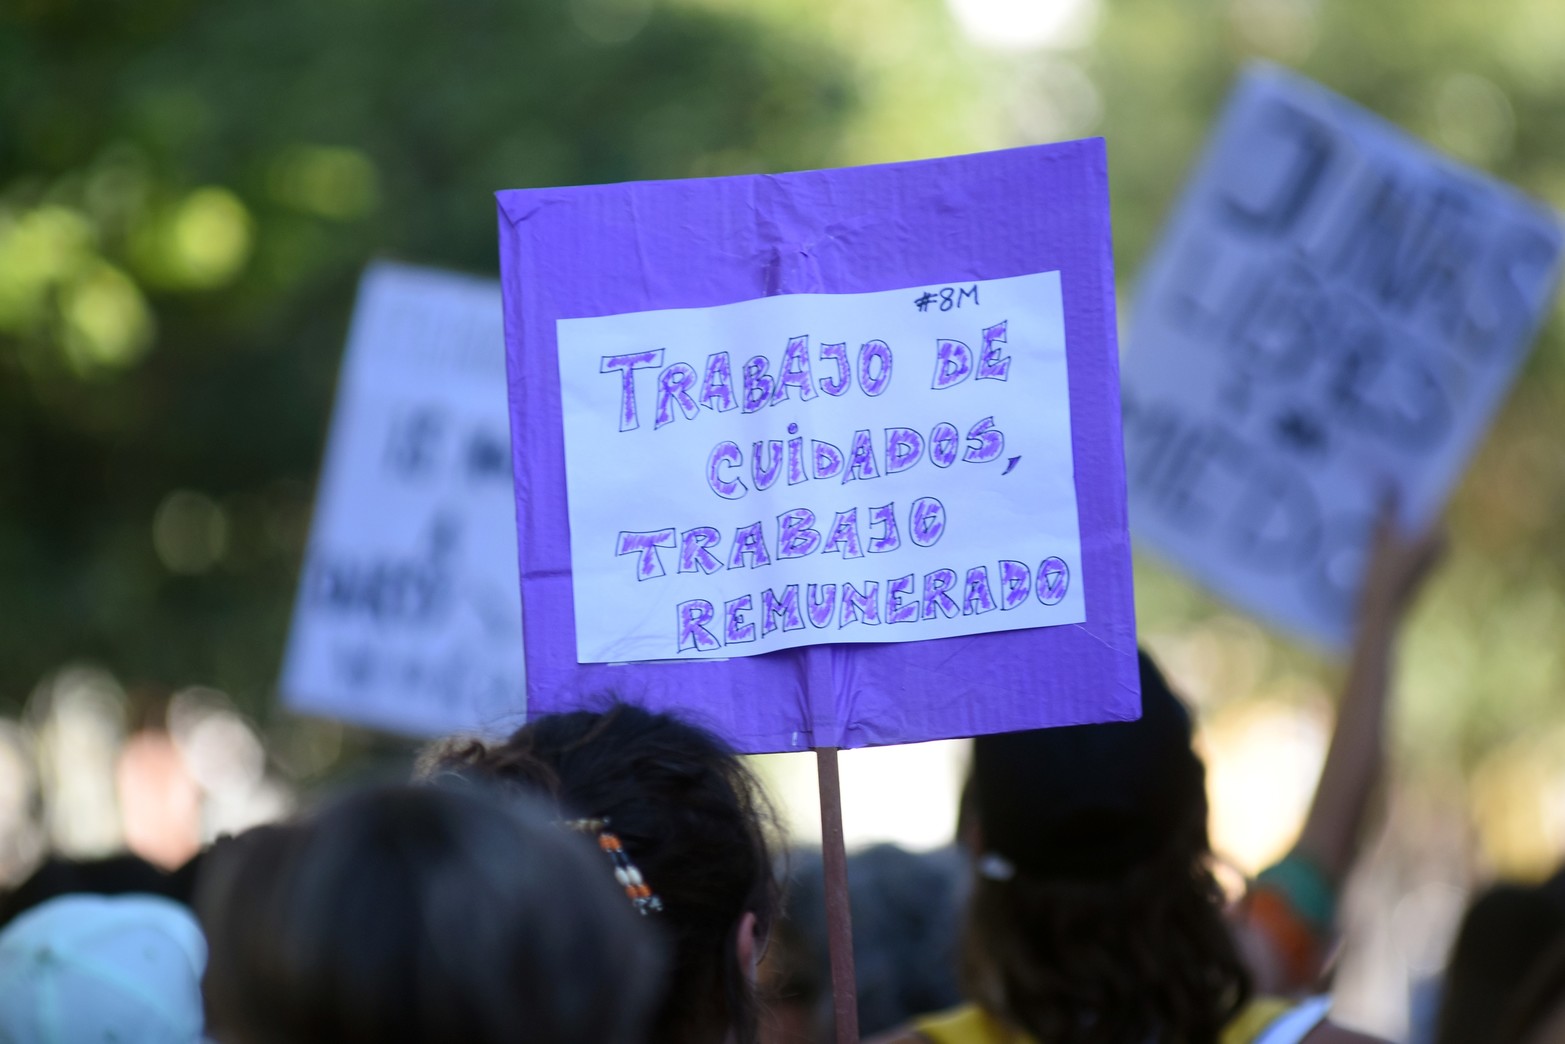  8M: con epicentro en la Plaza 25 de Mayo, las mujeres y disidencias volvieron a las calles de la ciudad para luchar por sus derechos.